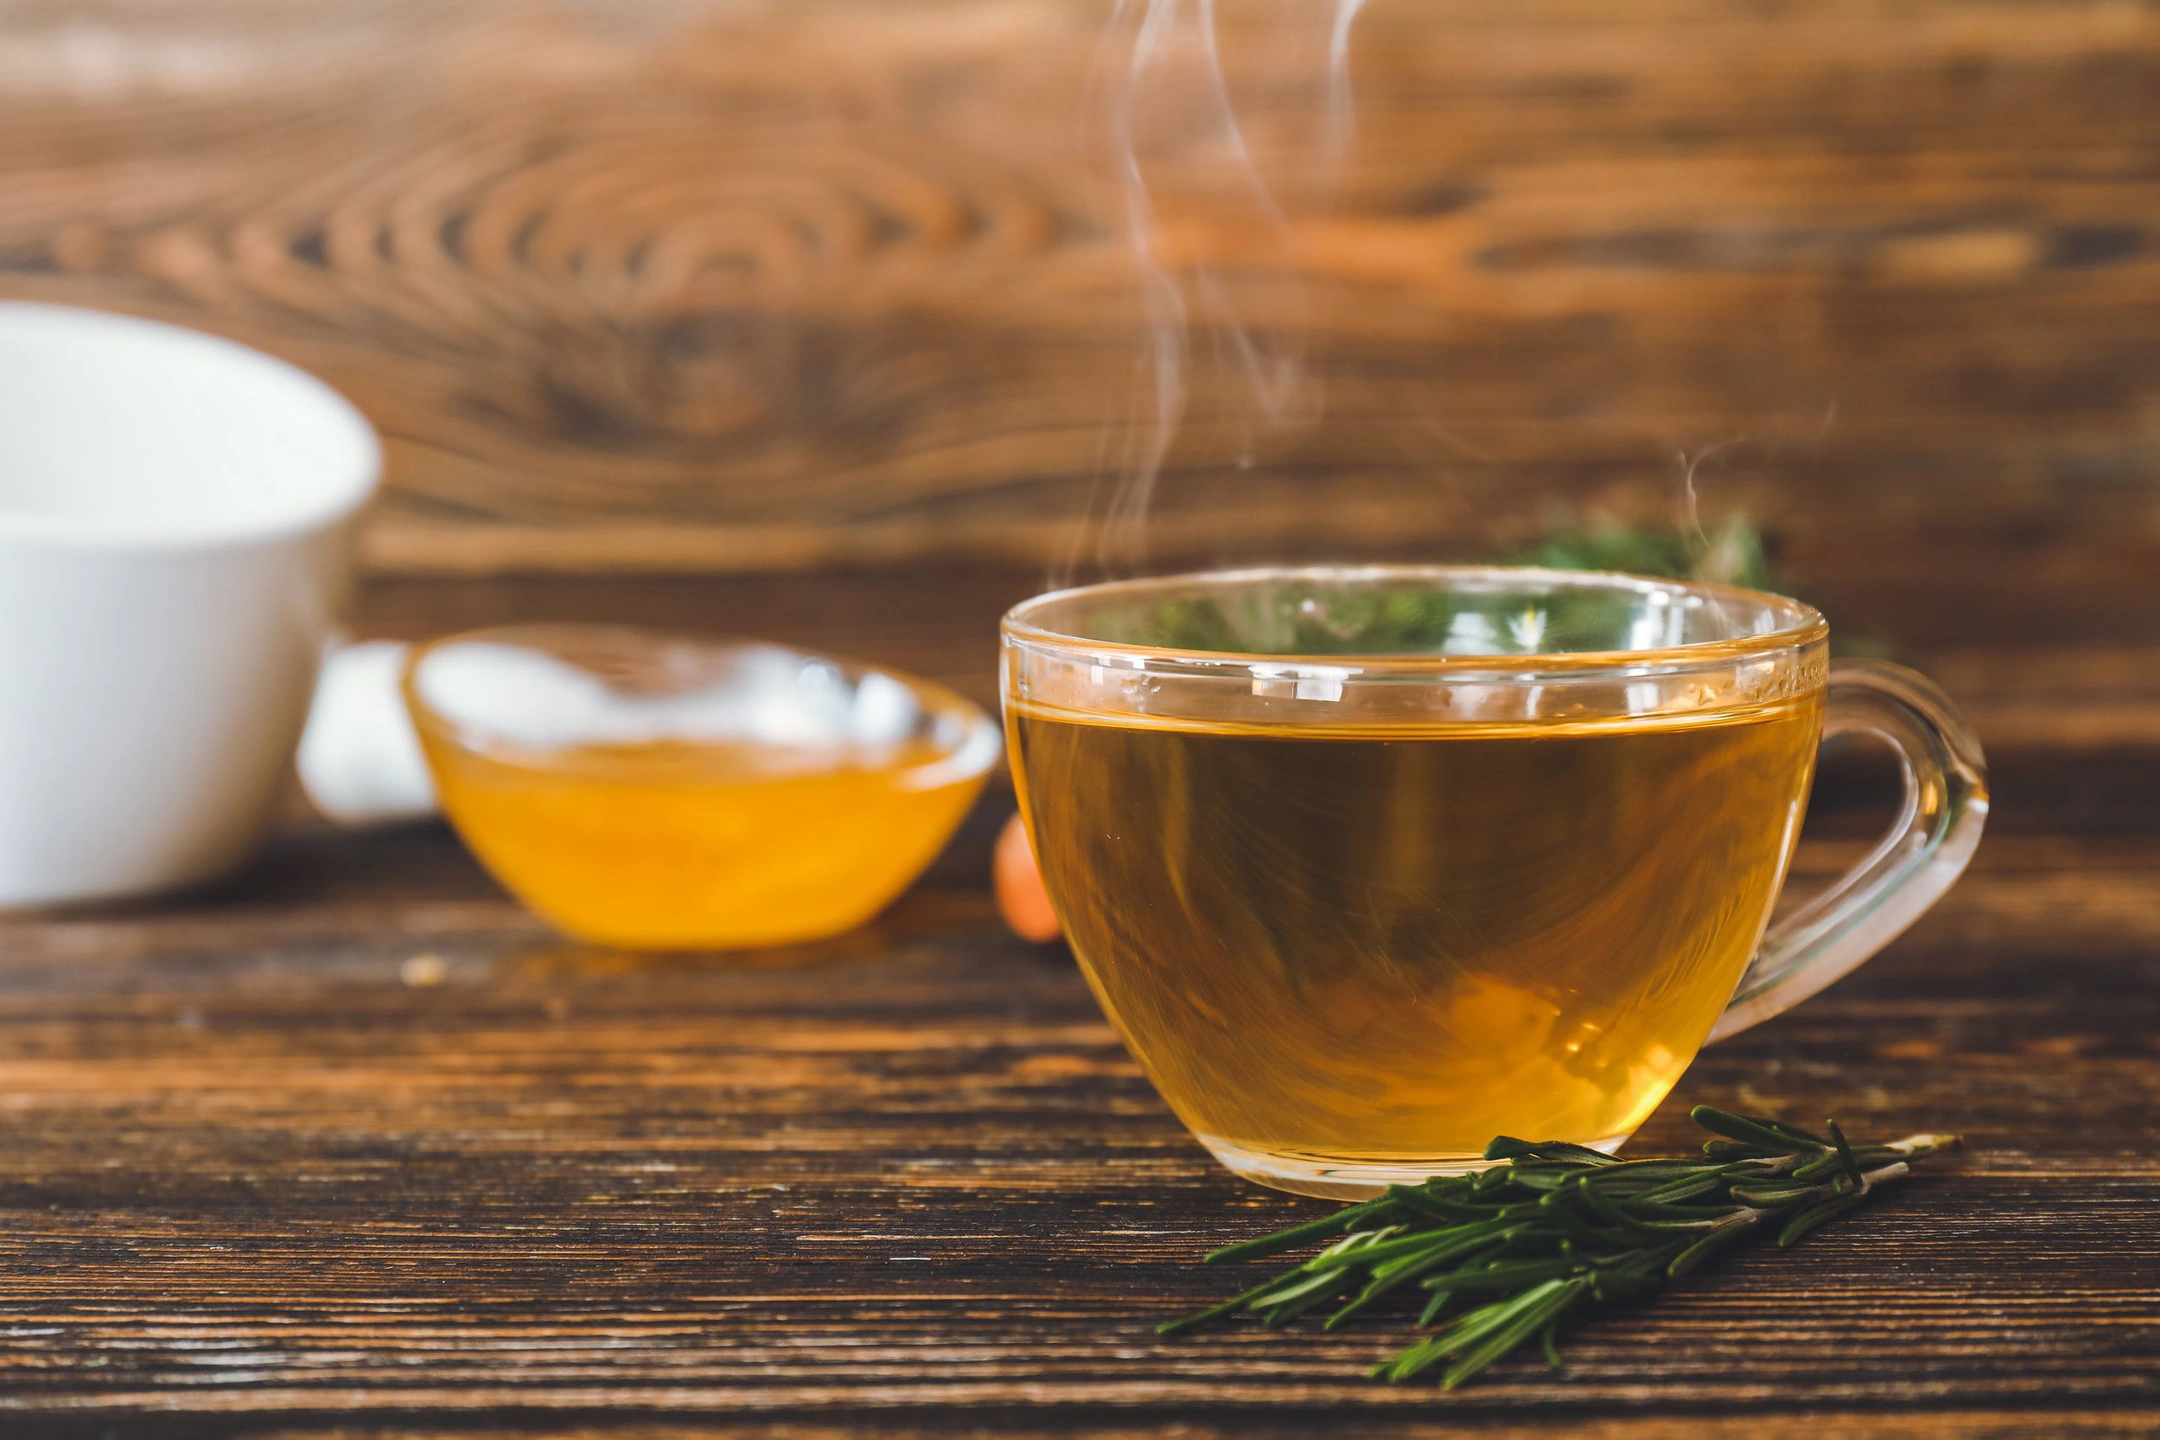 Учёный Созыкин: чай в пирамидках выделяет вредный для здоровья микропластик